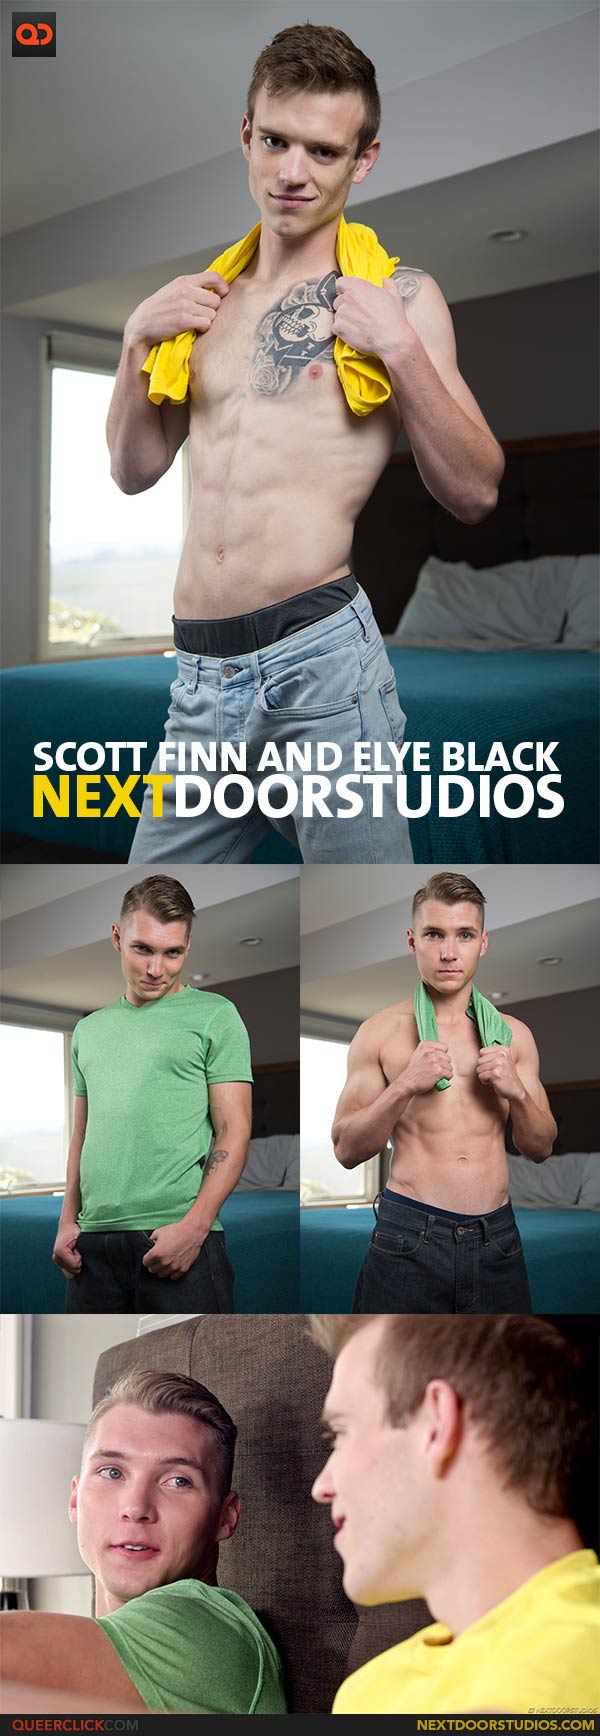 Next Door Studios:  Scott Finn and Elye Black